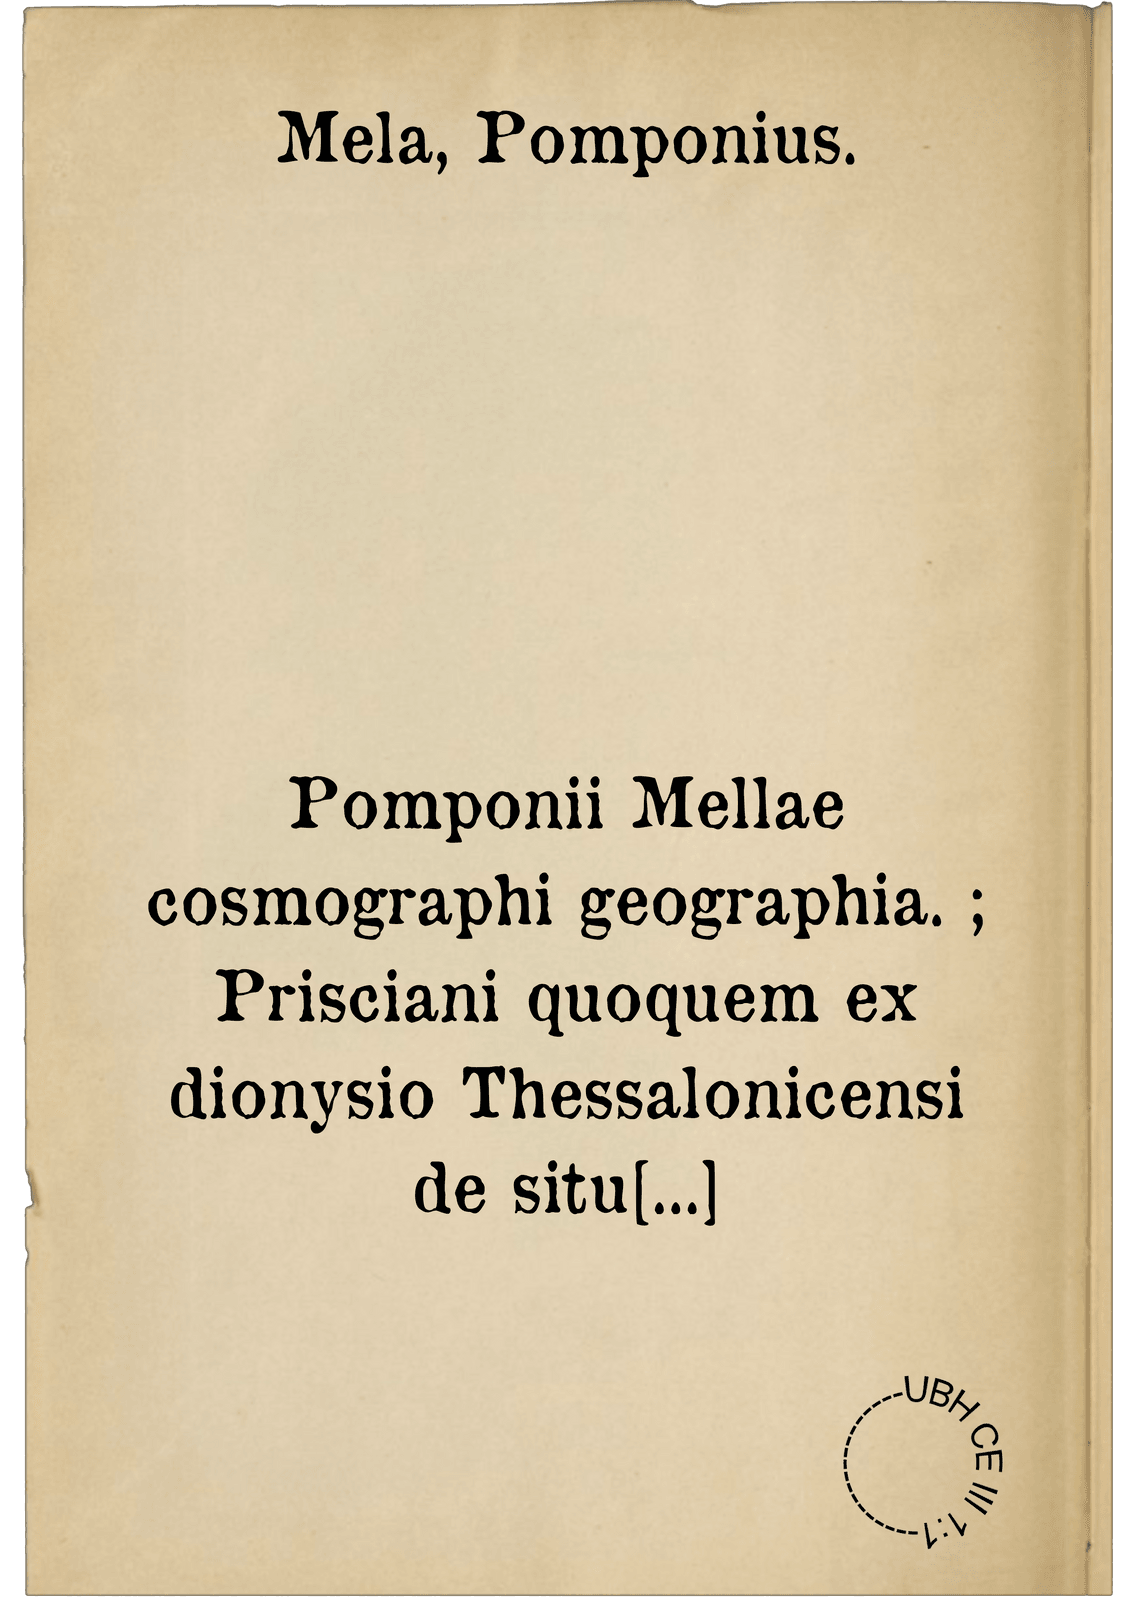 Pomponii Mellae cosmographi geographia. ; Prisciani quoquem ex dionysio Thessalonicensi de situ orbis interpretatio